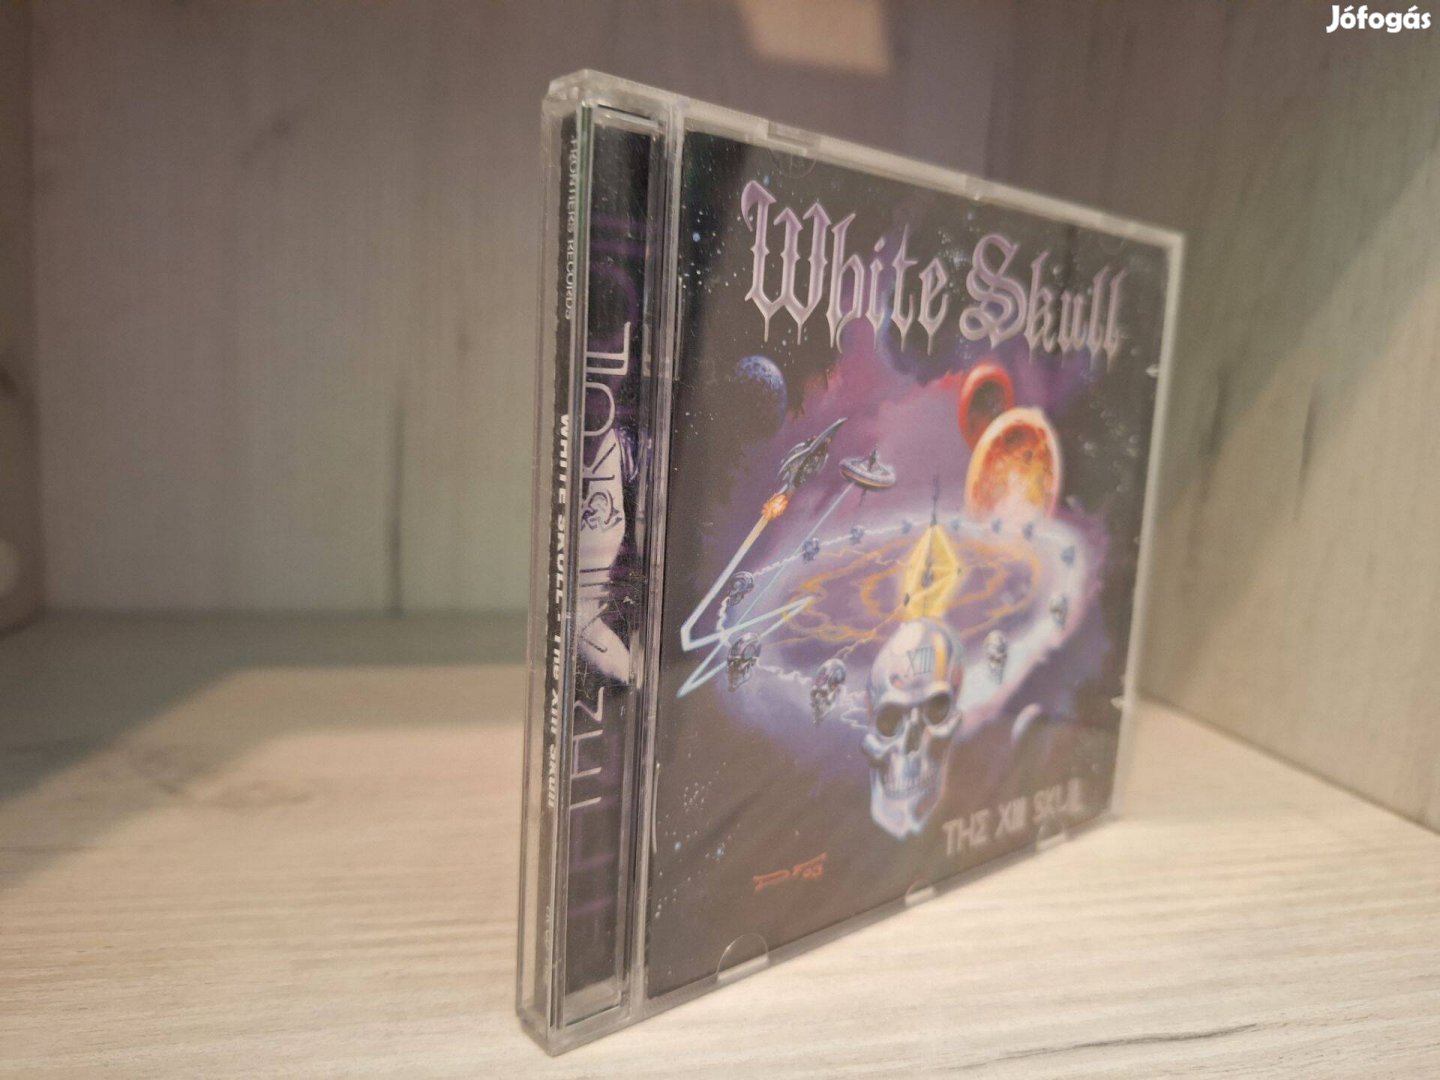 White Skull - The XIII Skull CD